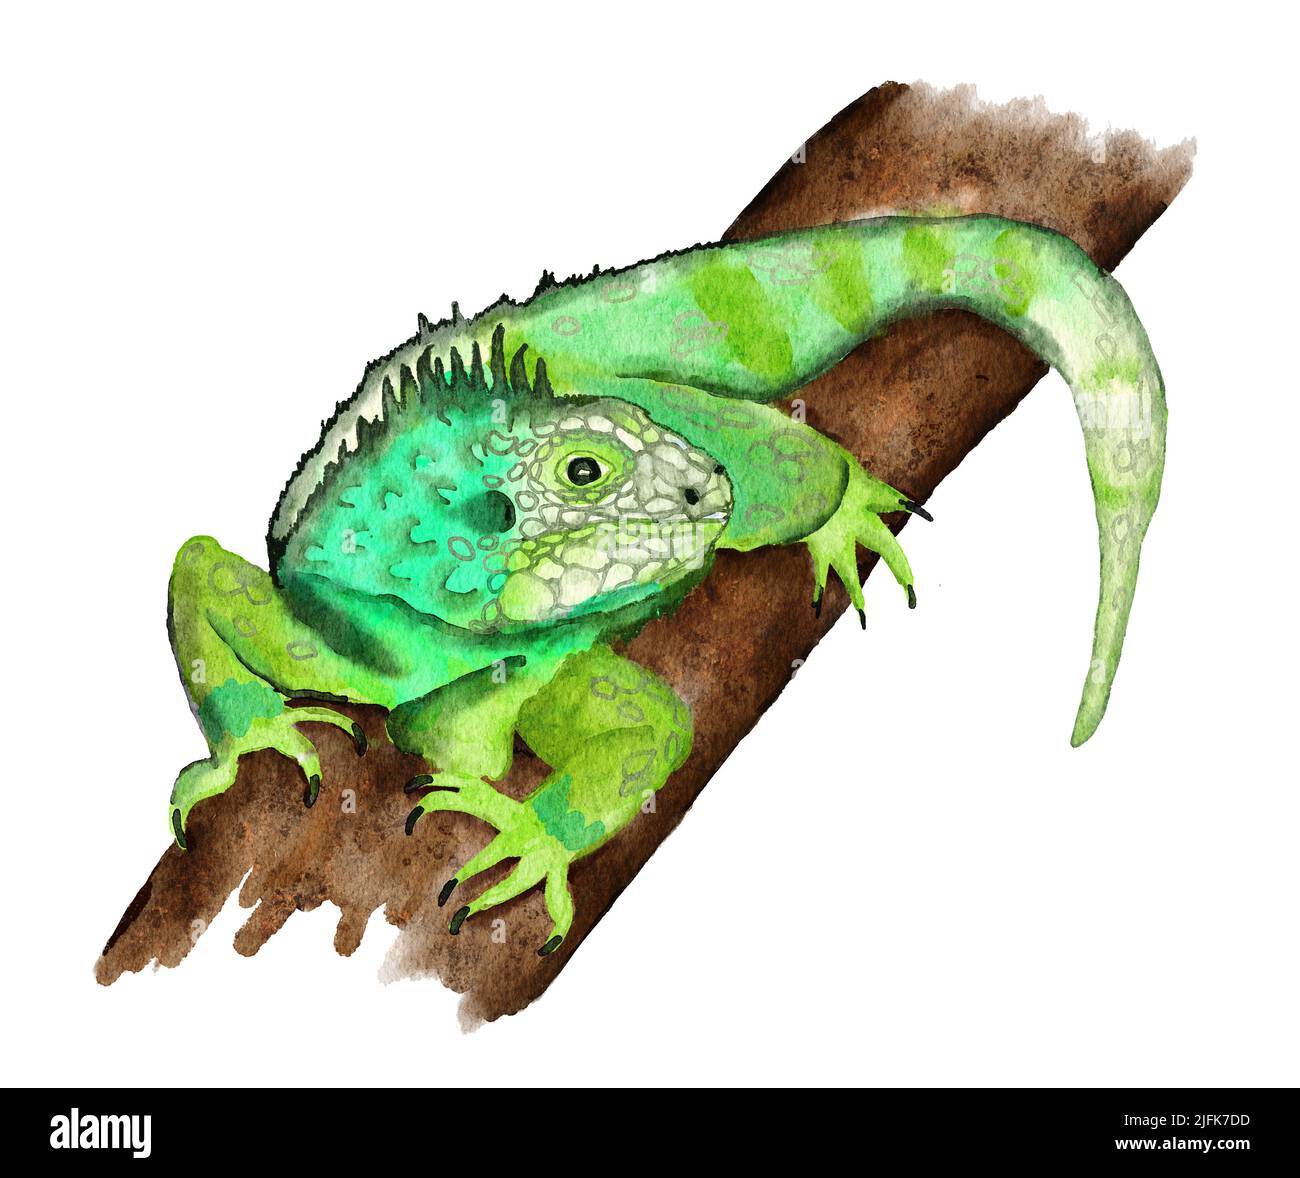 Aquarelle illustrationde l'iguana vert tropical sur une branche de forêt tropicale. Réplite lézard dans la nature sauvage espèces en voie de disparition, faune reptilane Banque D'Images